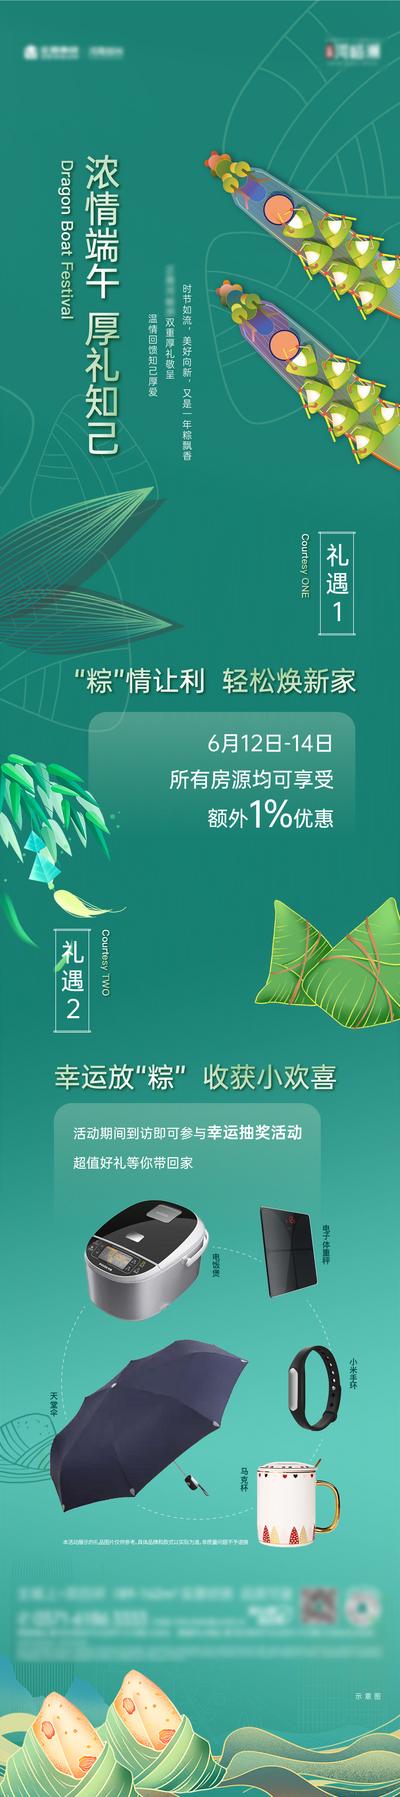 南门网 海报 长图 房地产 端午节 中国传统节日 龙舟 粽子 礼品 活动